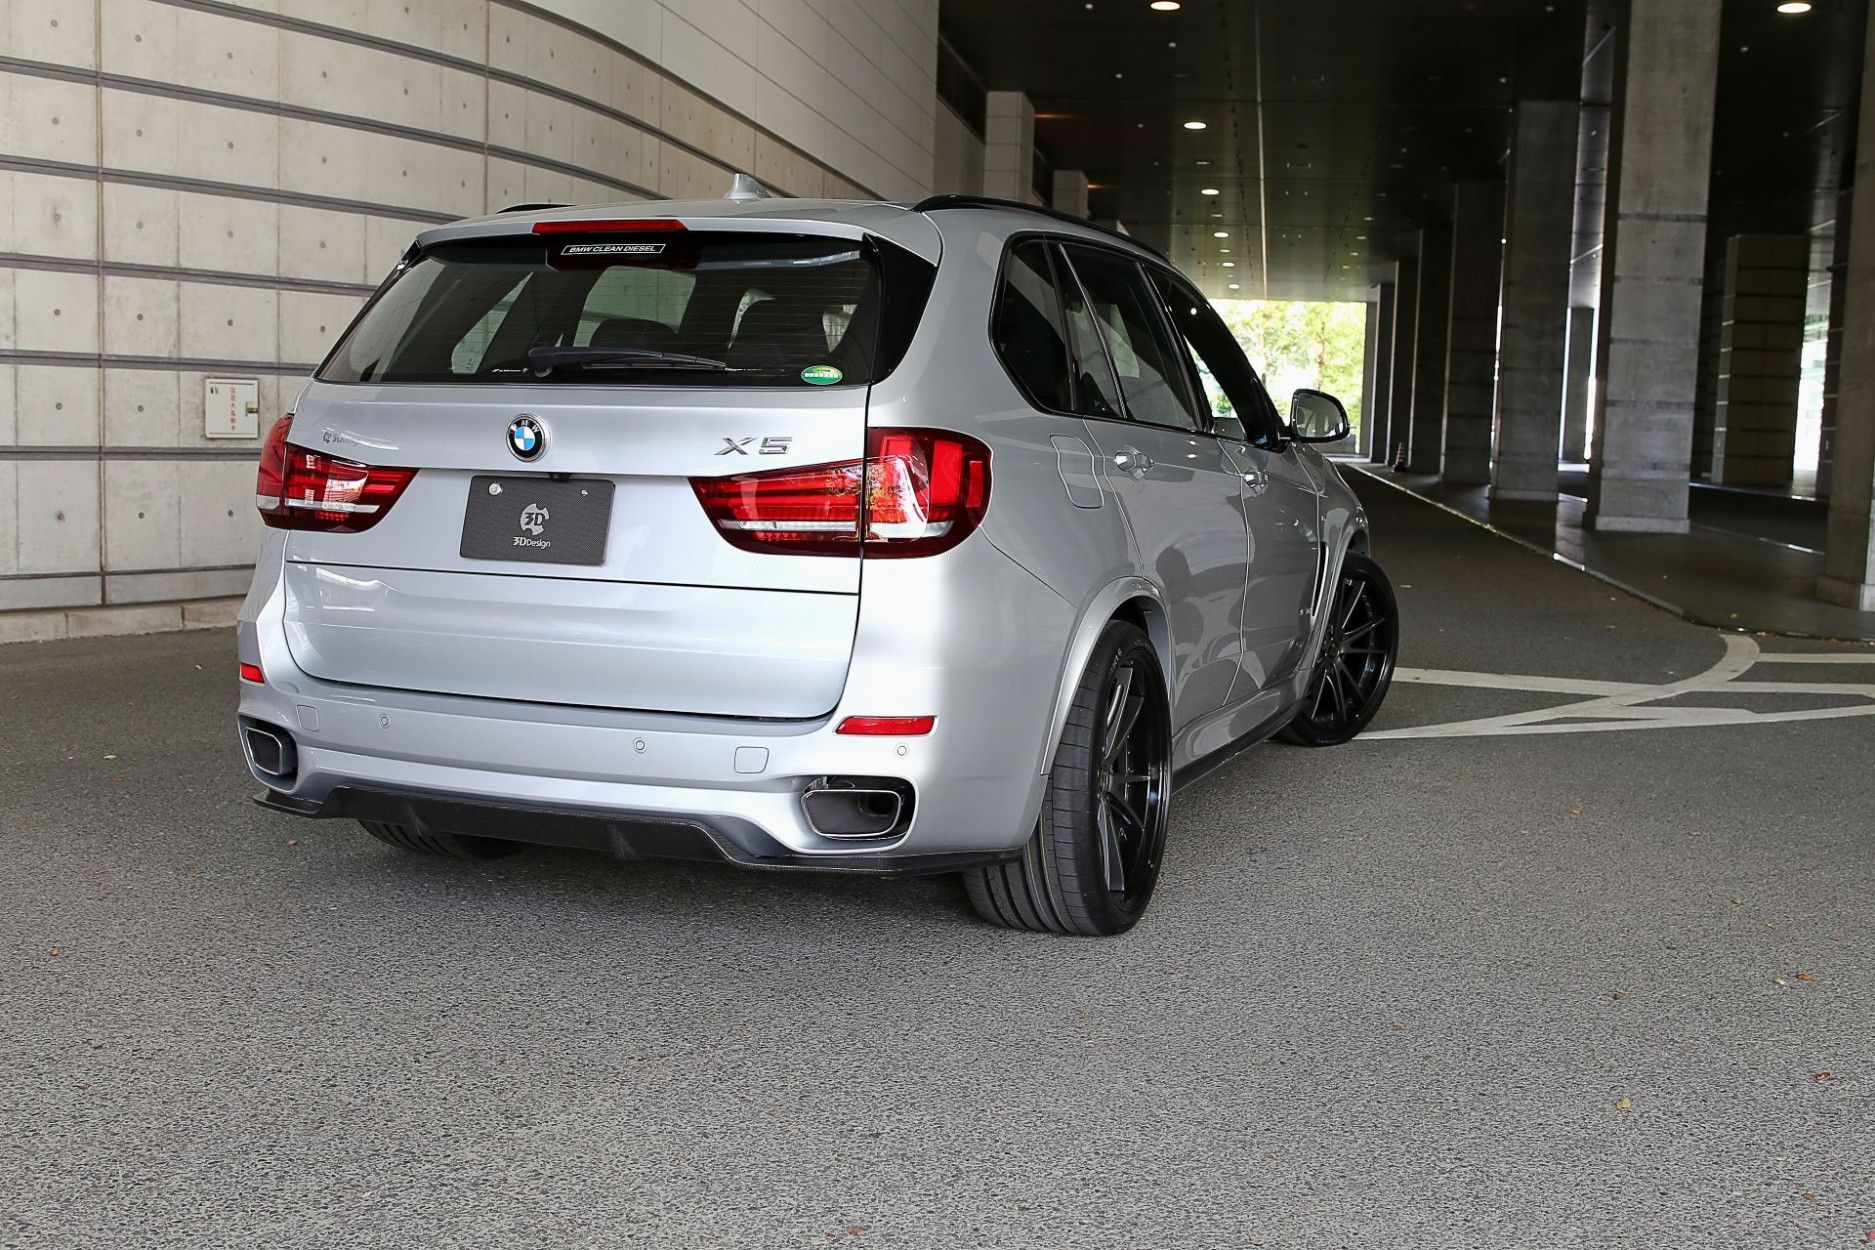 BMW X5 F15 Mittelkonsole Carbon Carbonveredelung Carbonbeschichtung